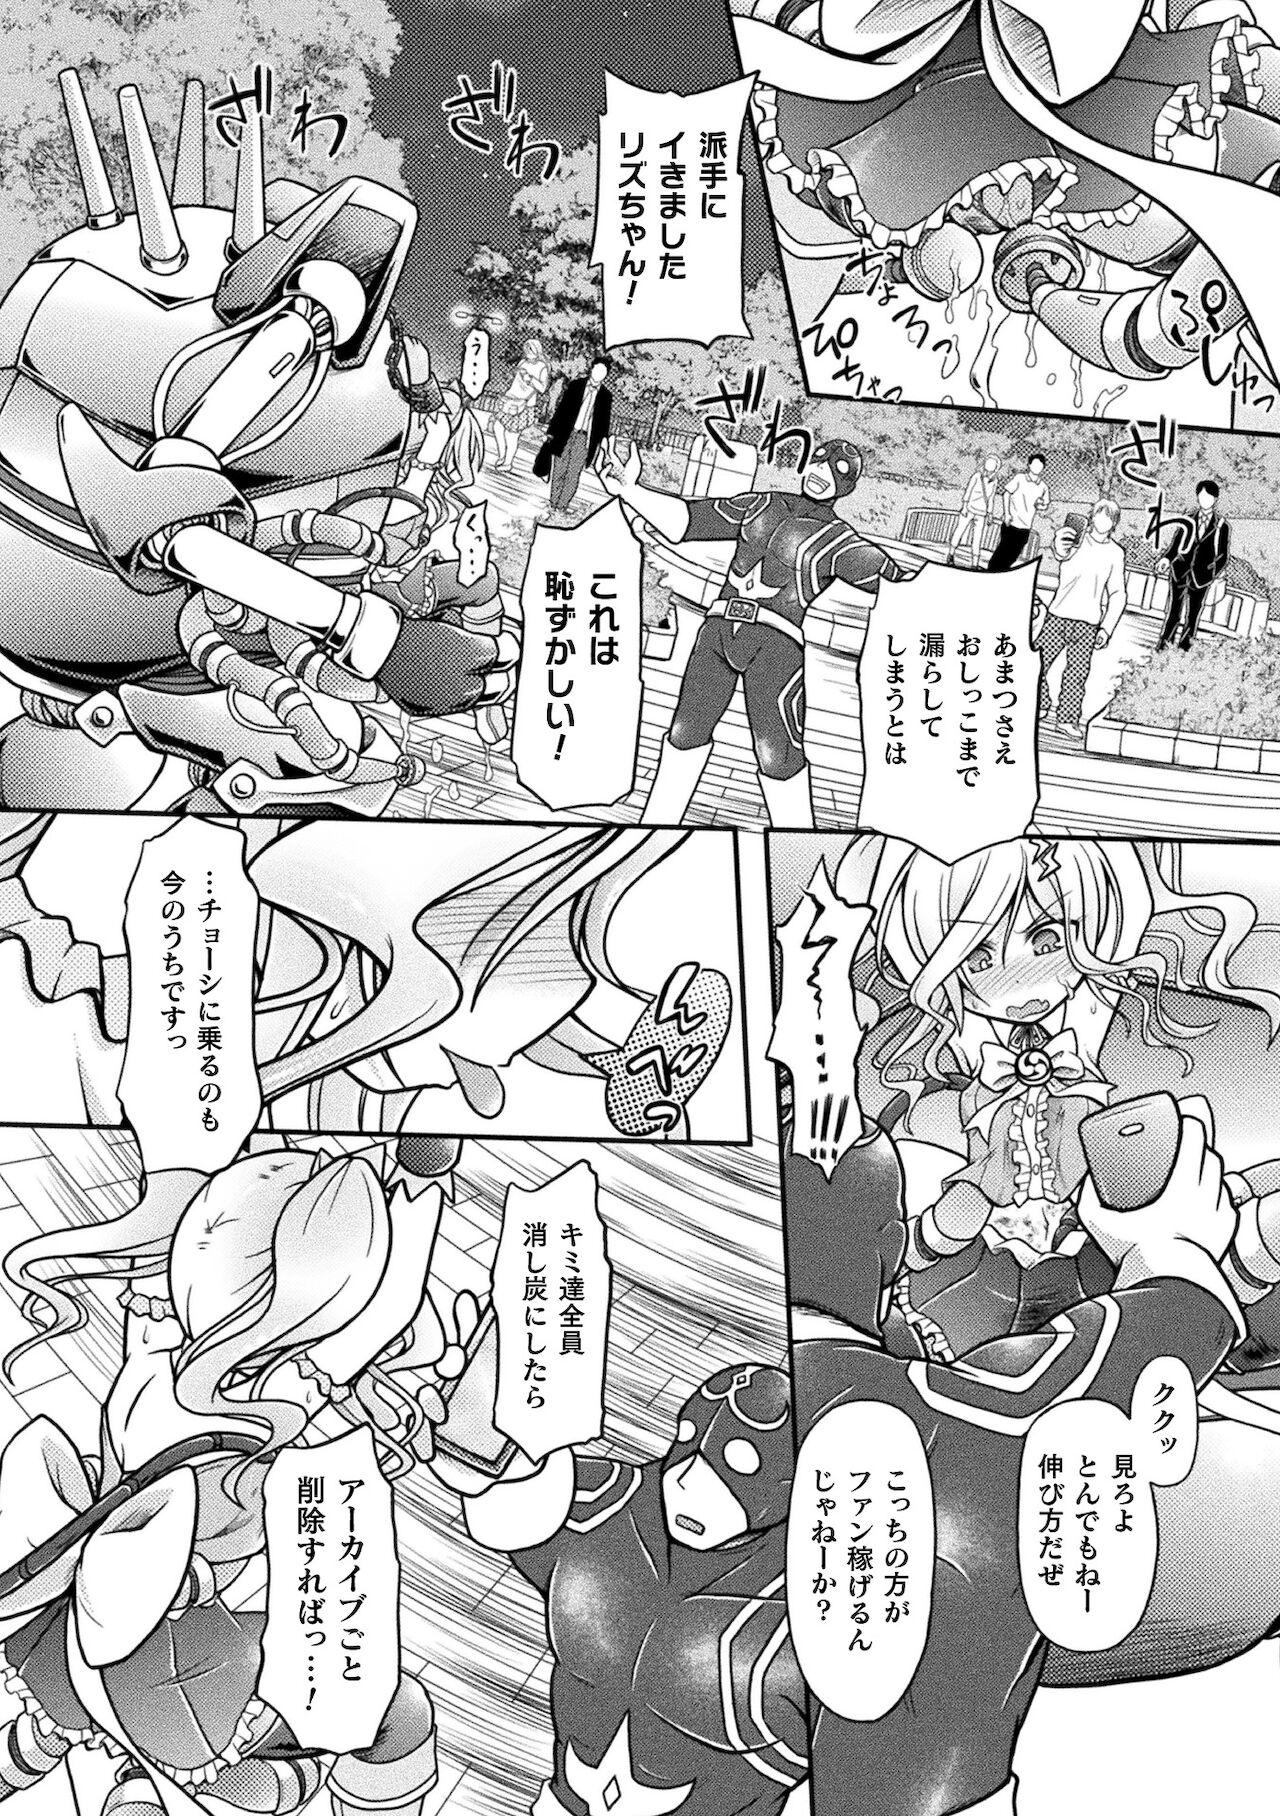 2D Comic Magazine Mesugaki Henshin Heroine Kikaikan Seisai Hijou no Wakarase Machine de Renzoku Loli Acme Vol. 2 33